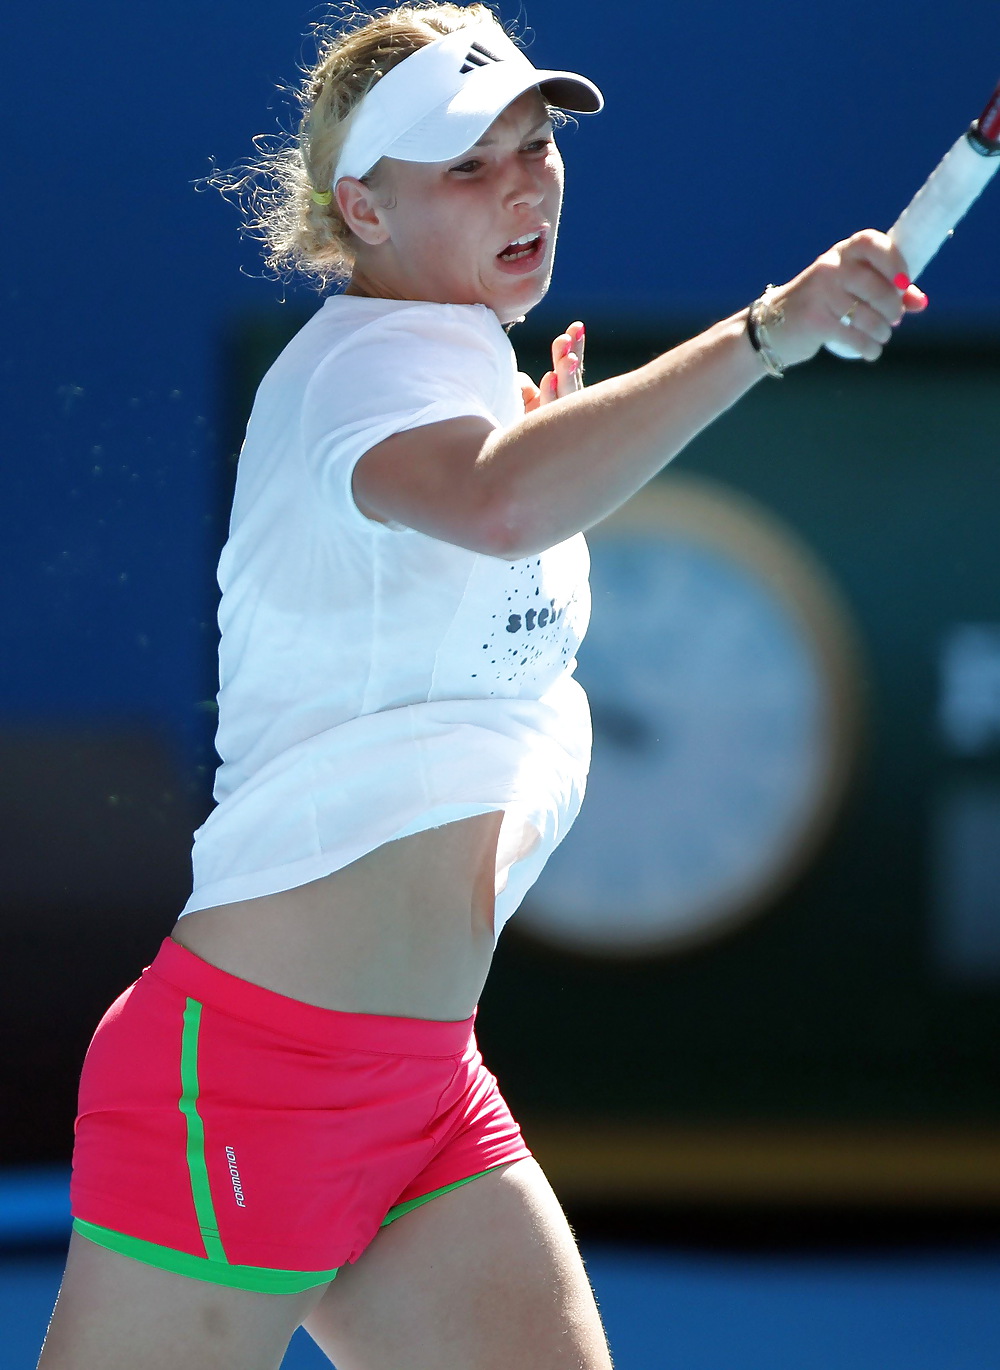 Caro Wozniacki - Most fuckable tennis player #26070054